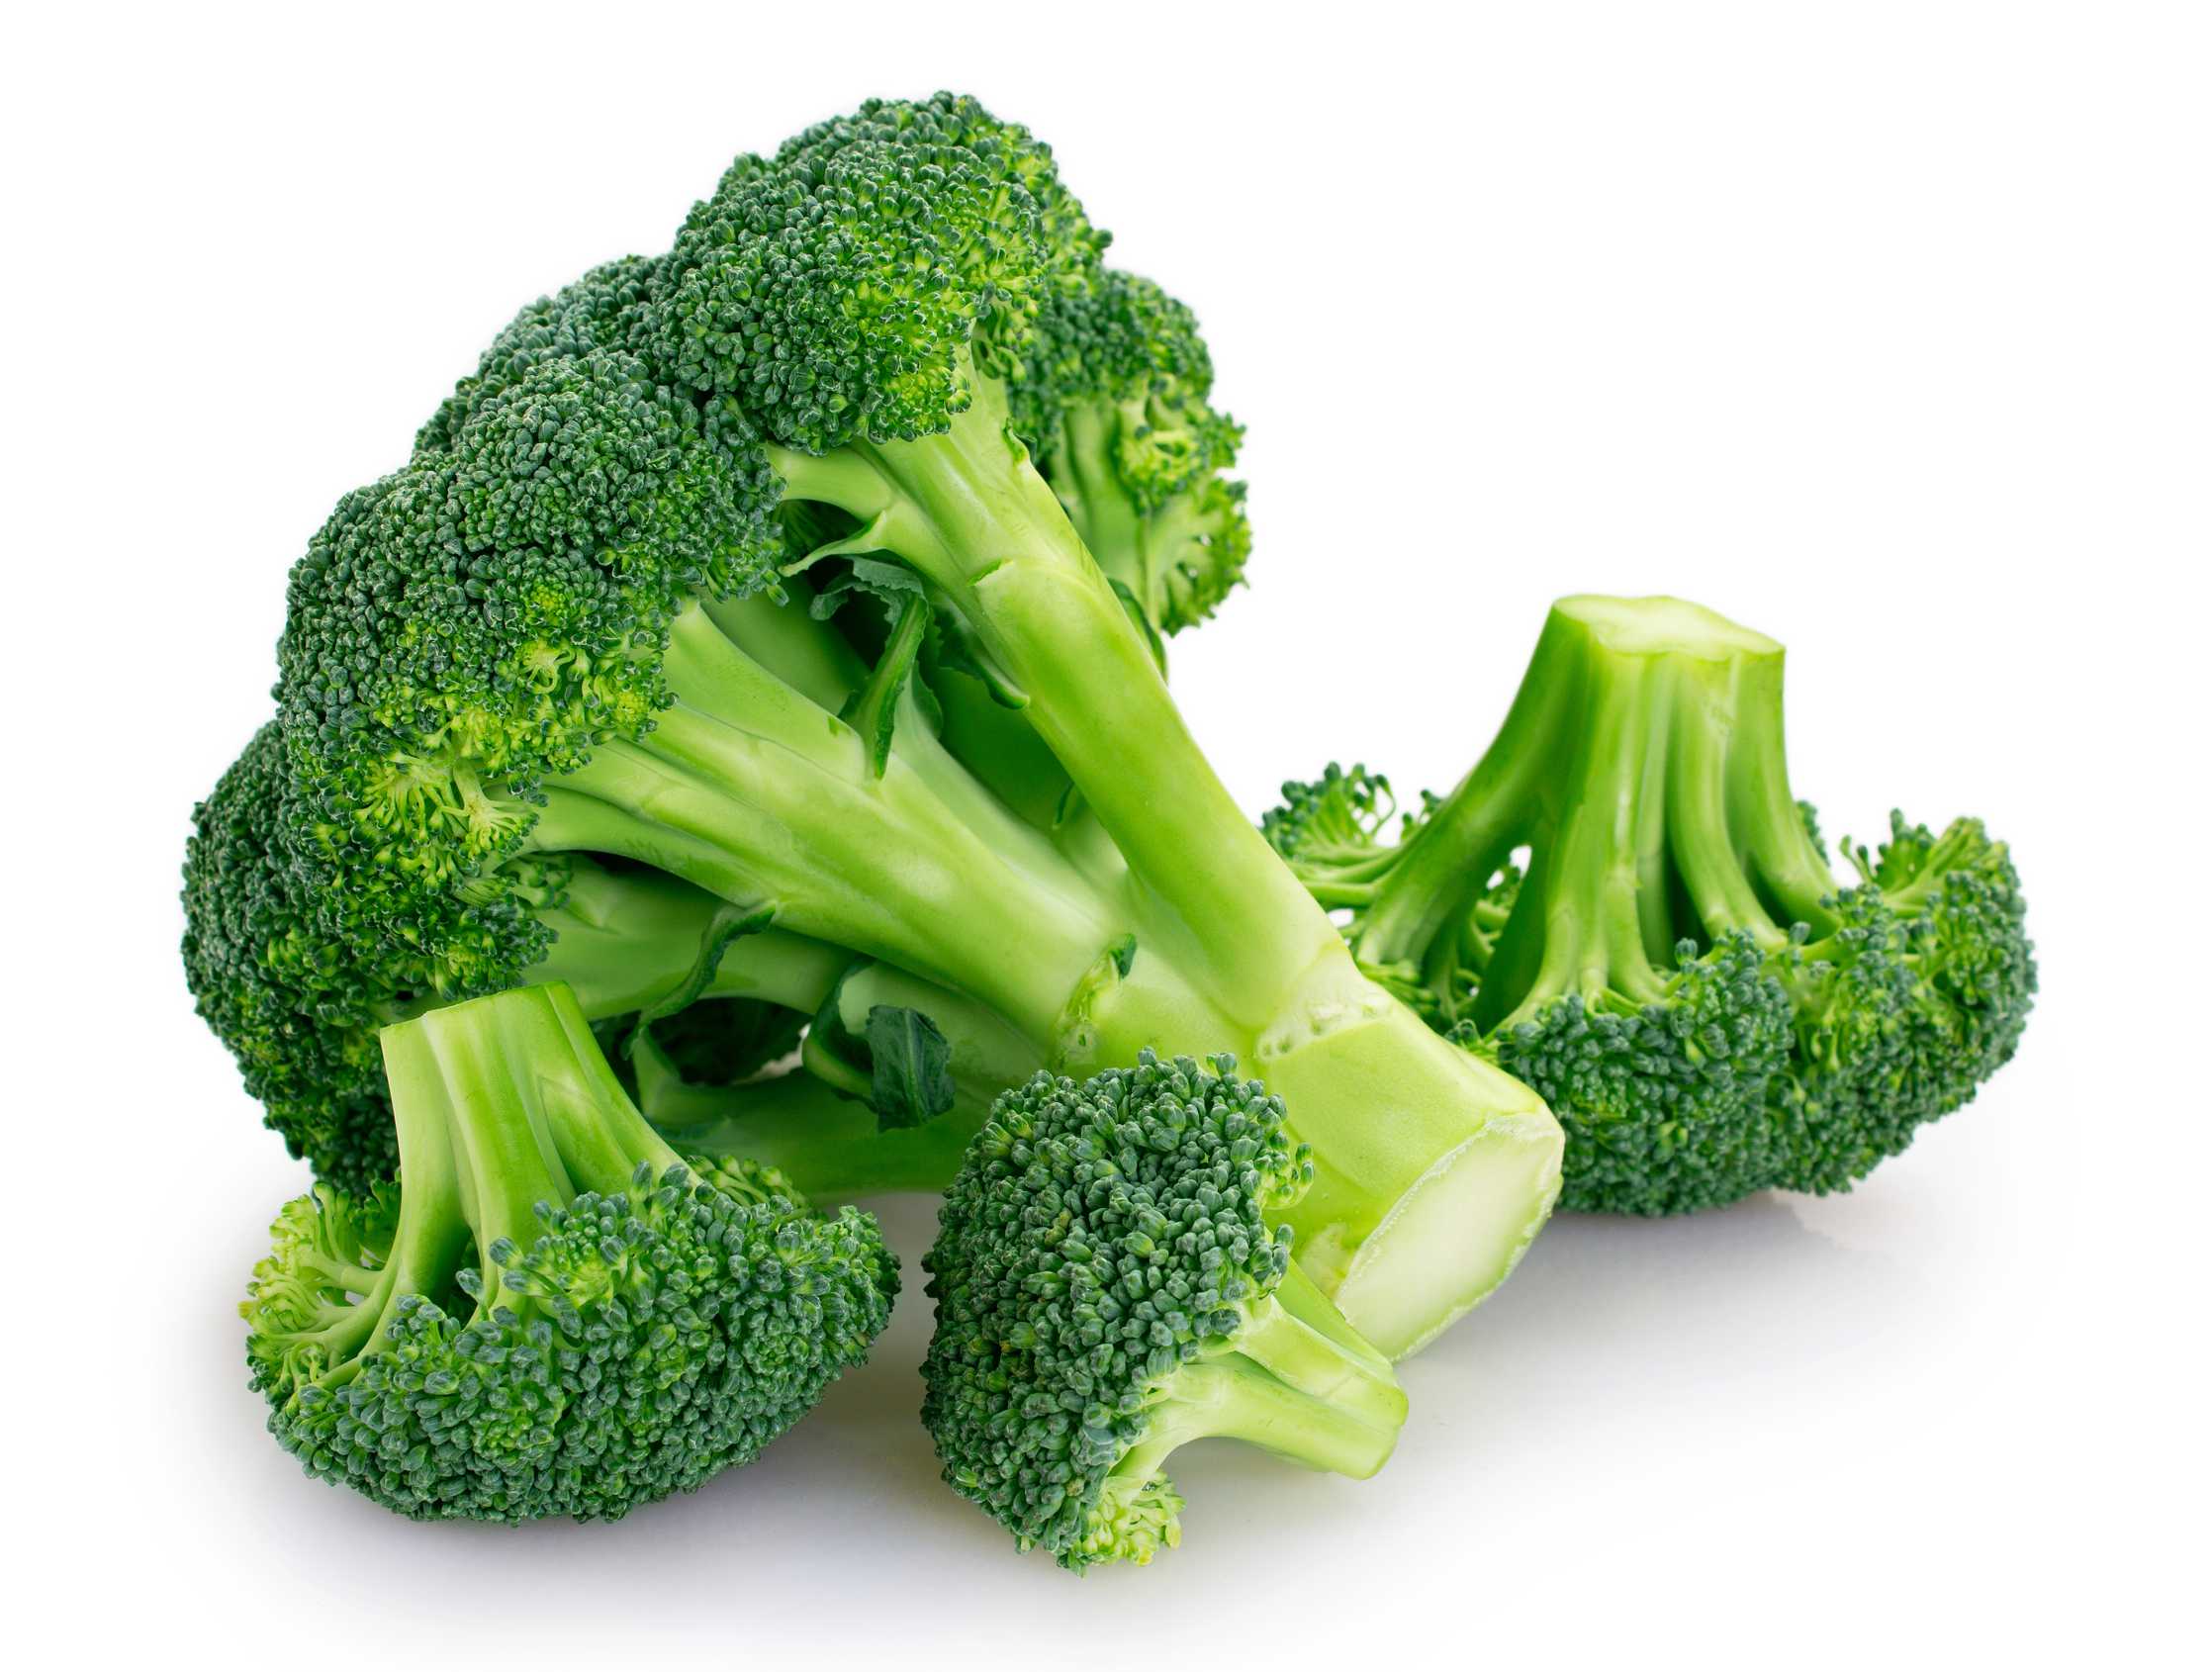 microsoft, ist brokkoli gesund? eine bewertung durch ernährungsexperten